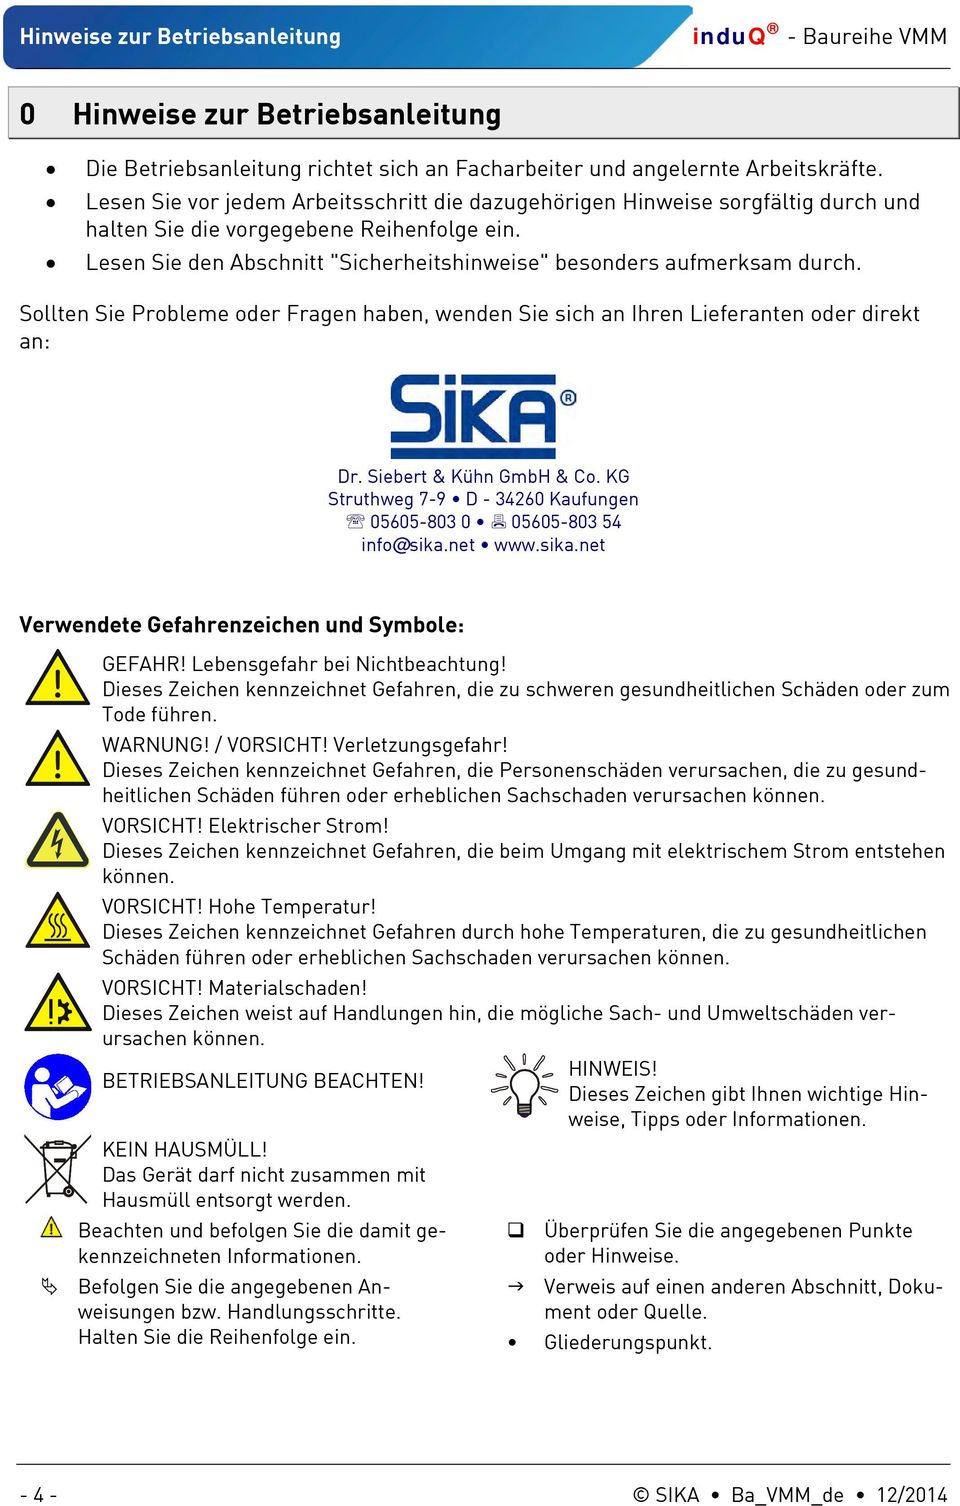 Sollten Sie Probleme oder Fragen haben, wenden Sie sich an Ihren Lieferanten oder direkt an: Dr. Siebert & Kühn GmbH & Co. KG Struthweg 7-9 D - 34260 Kaufungen 05605-803 0 05605-803 54 info@sika.